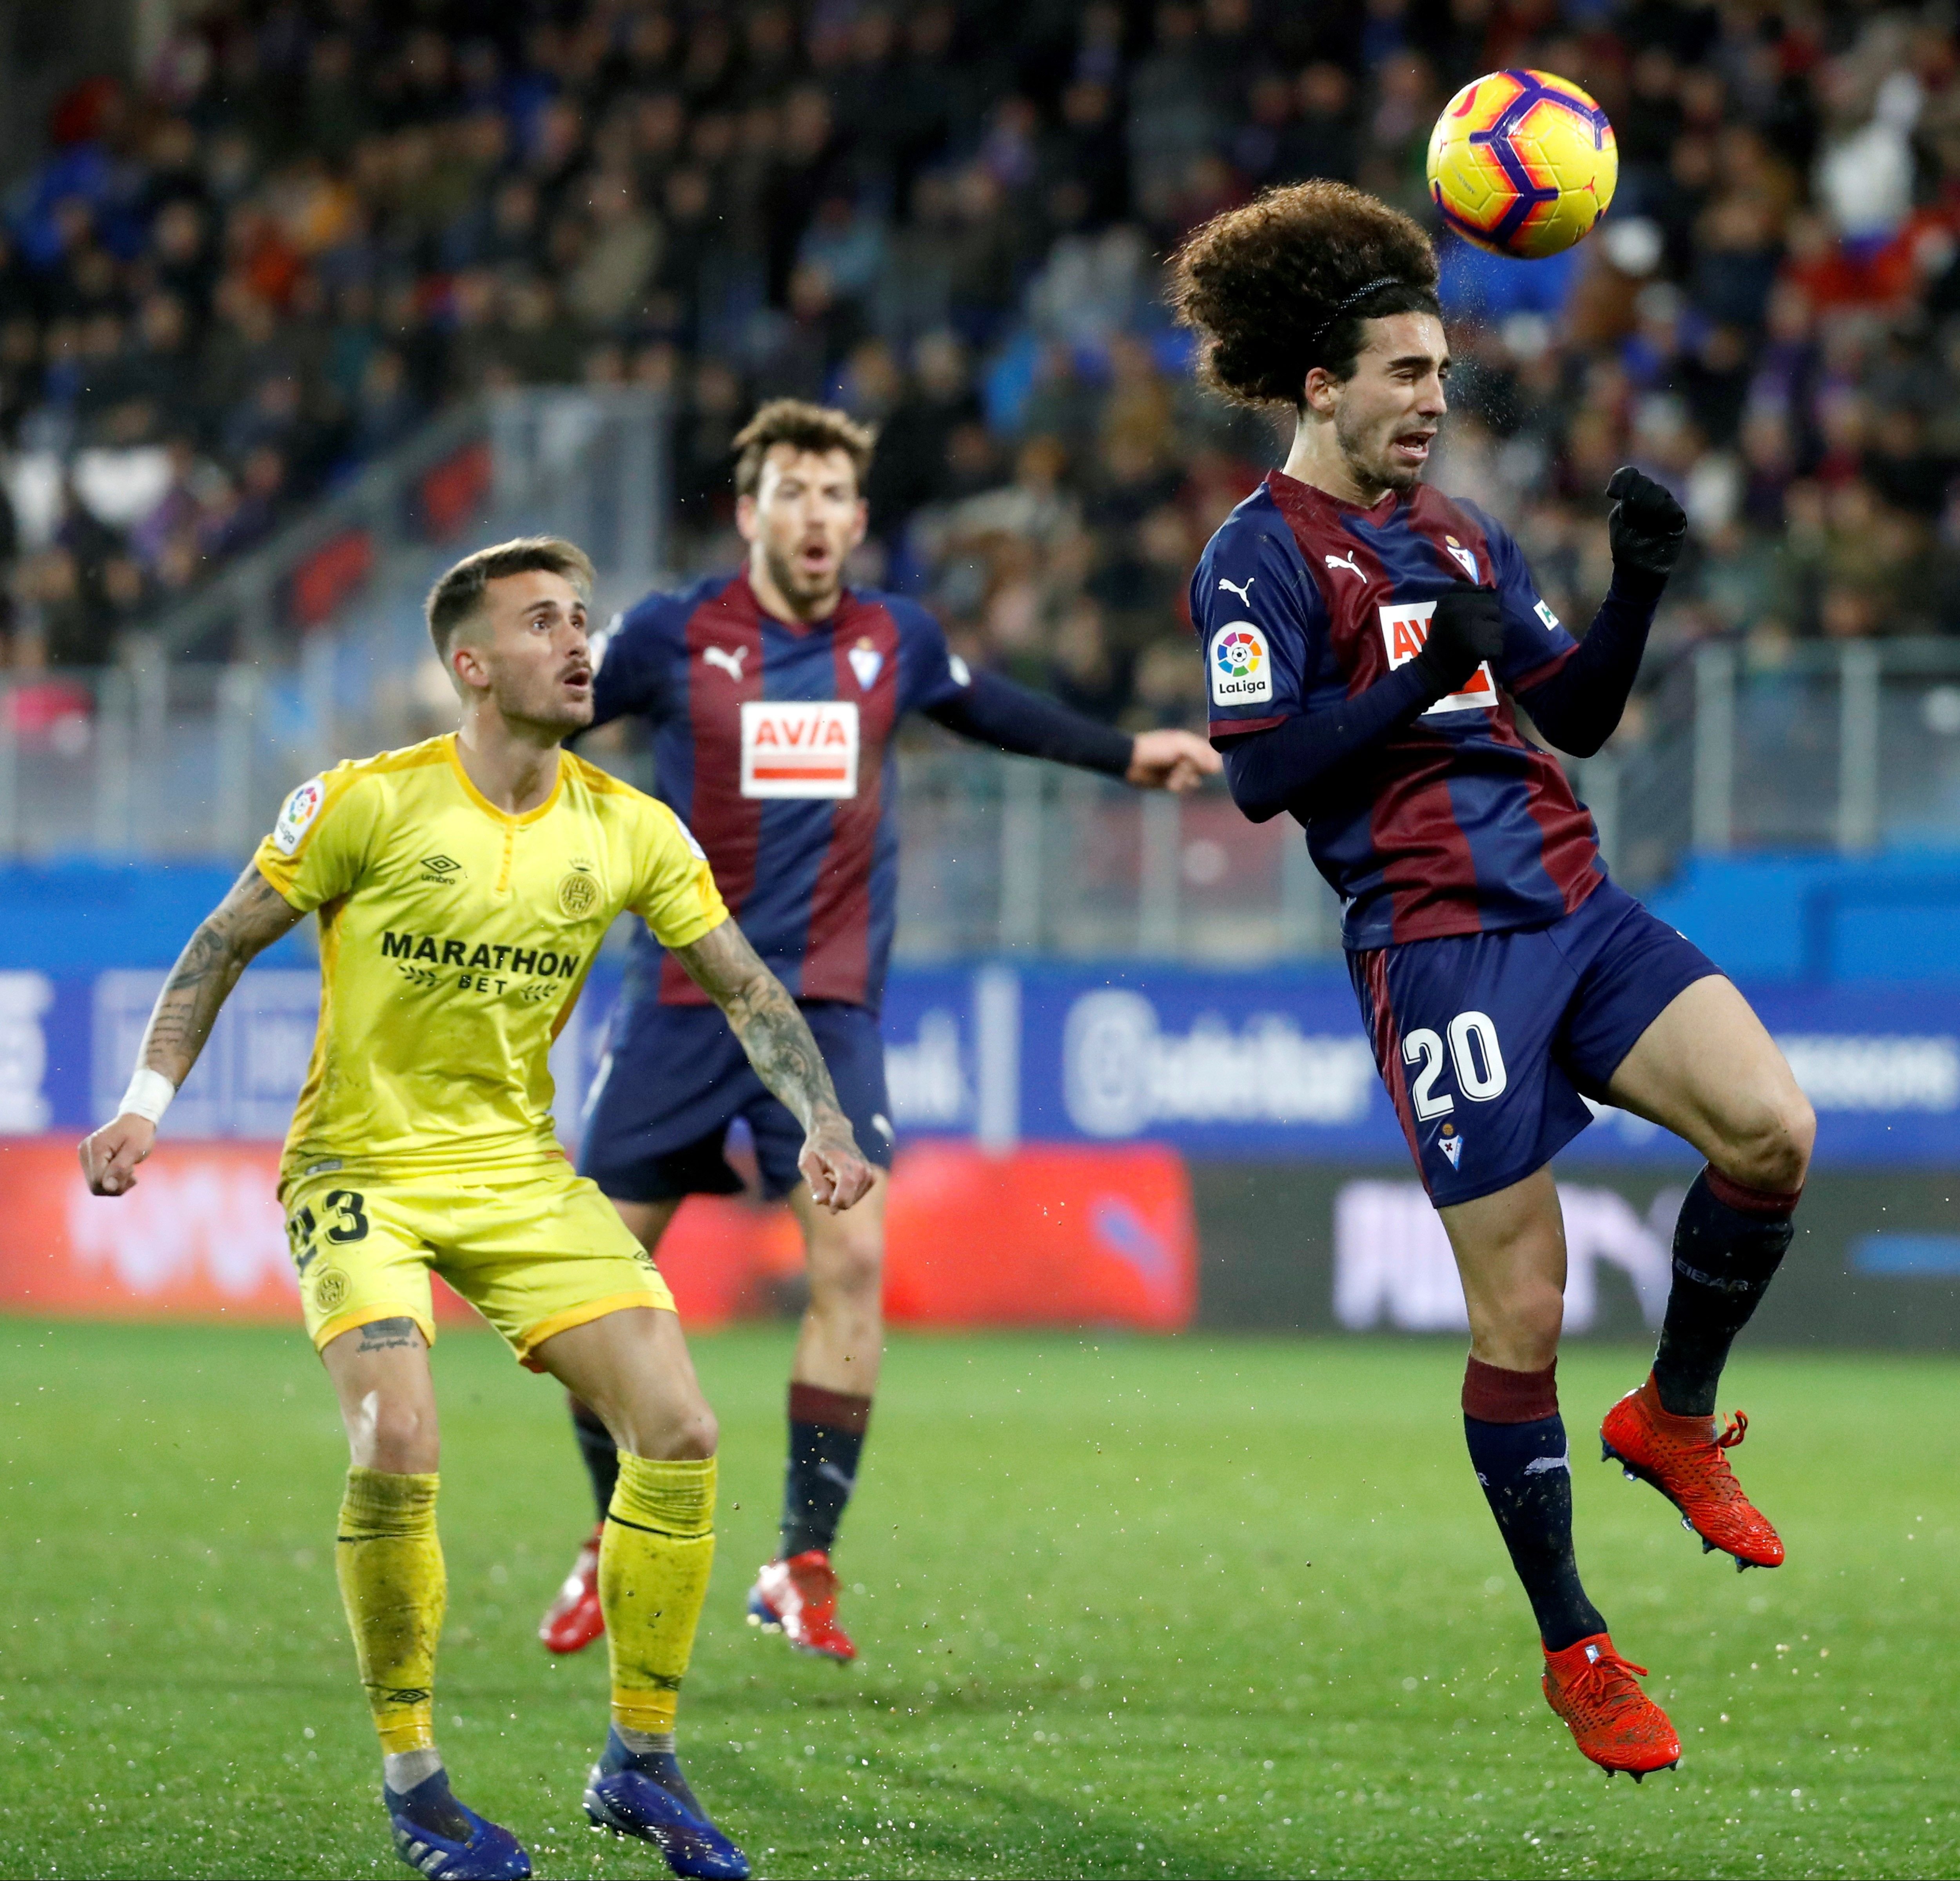 L'Eibar compra Cucurella i el Barça espera fer negoci